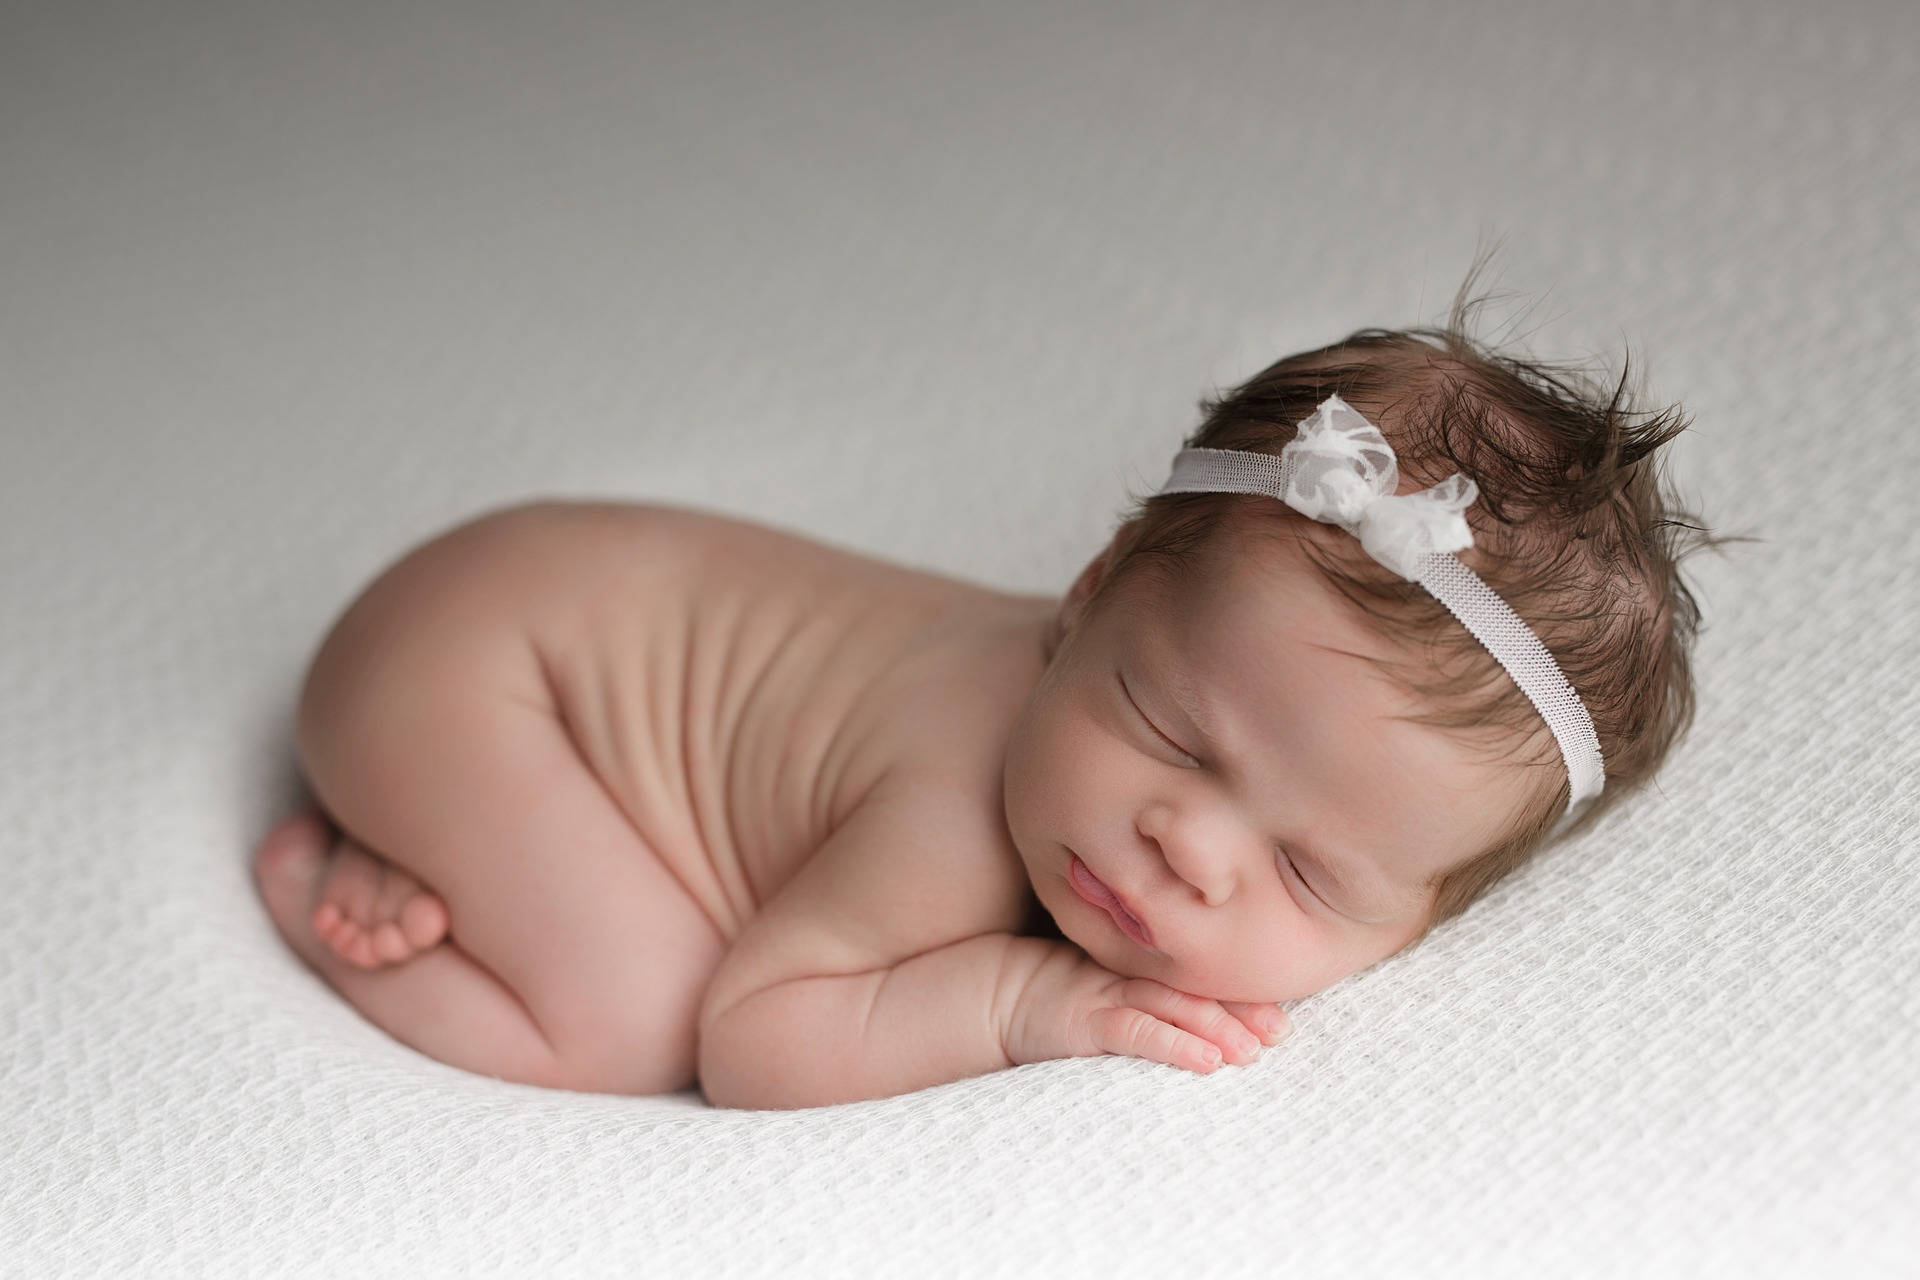 Very Cute Baby In Fetal Position Wallpaper